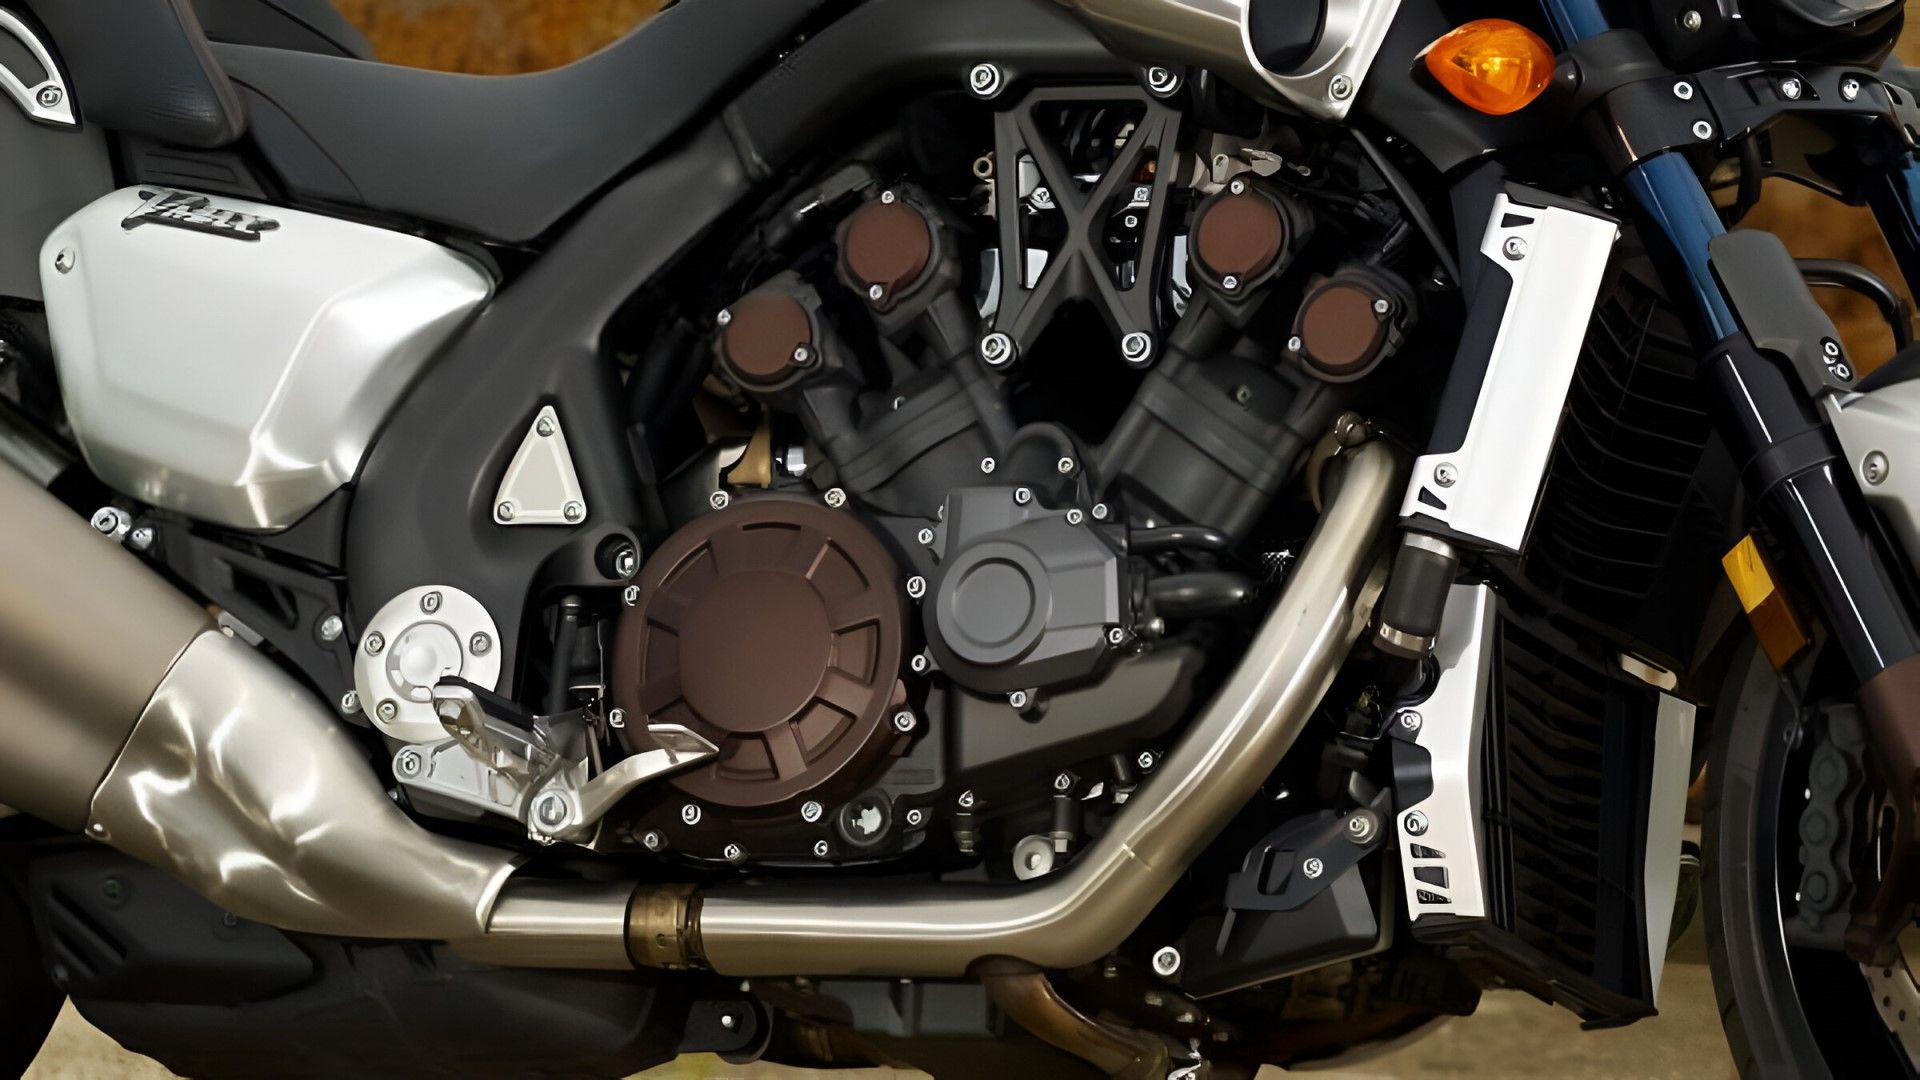 2012 Yamaha V Max V-Four engine close-up shot